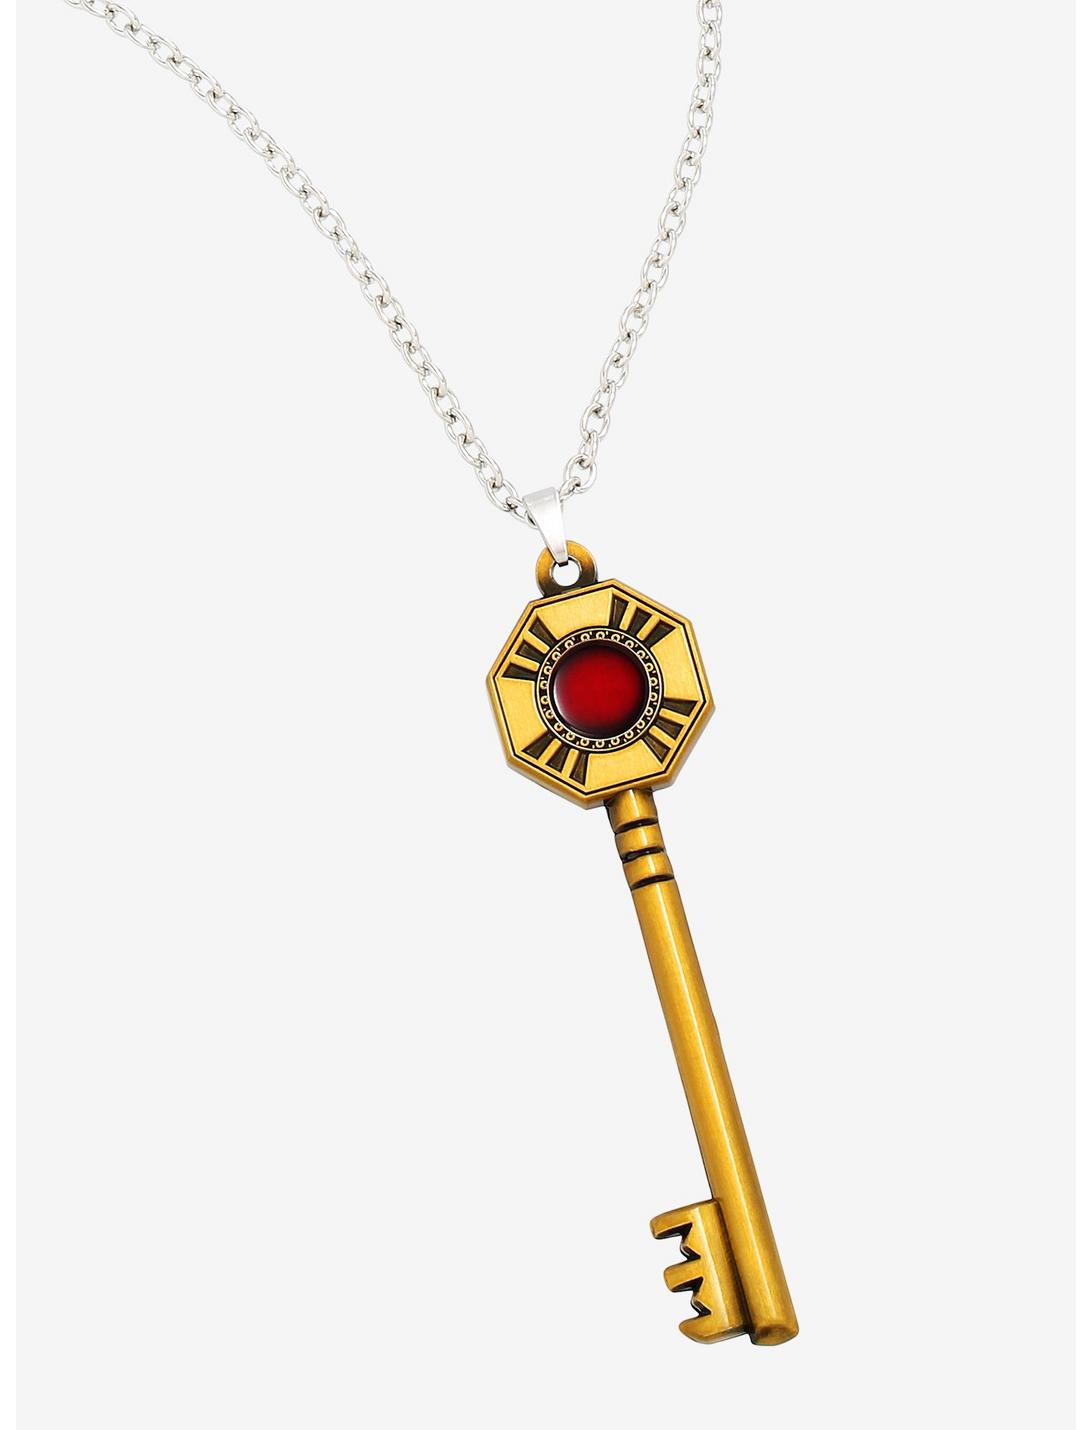 JoJo's Bizarre Adventure: Golden Wind Key Necklace, , hi-res